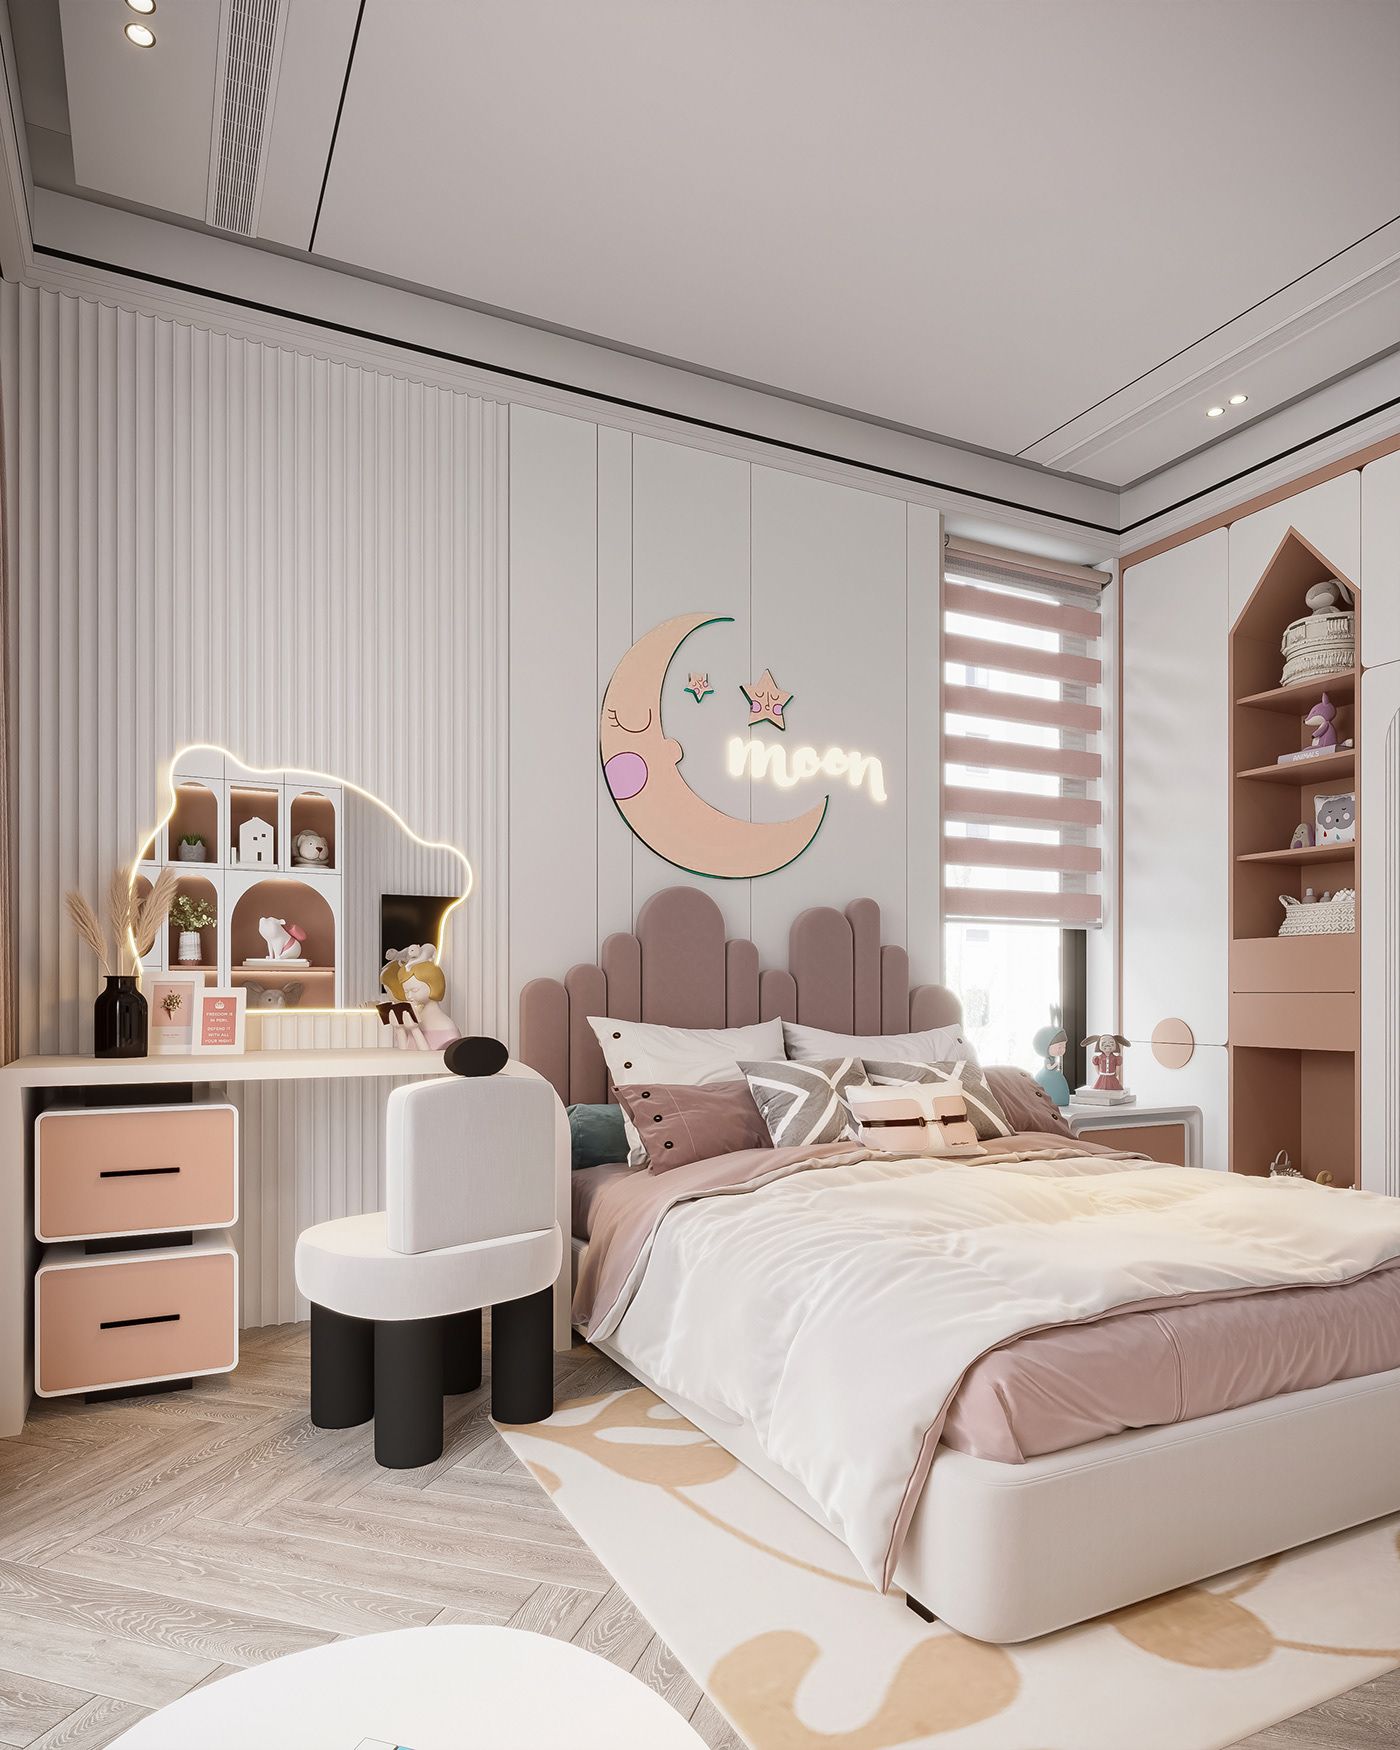 Thiết kế phòng ngủ cho bé gái màu hồng phối trắng phong cách hiện đại